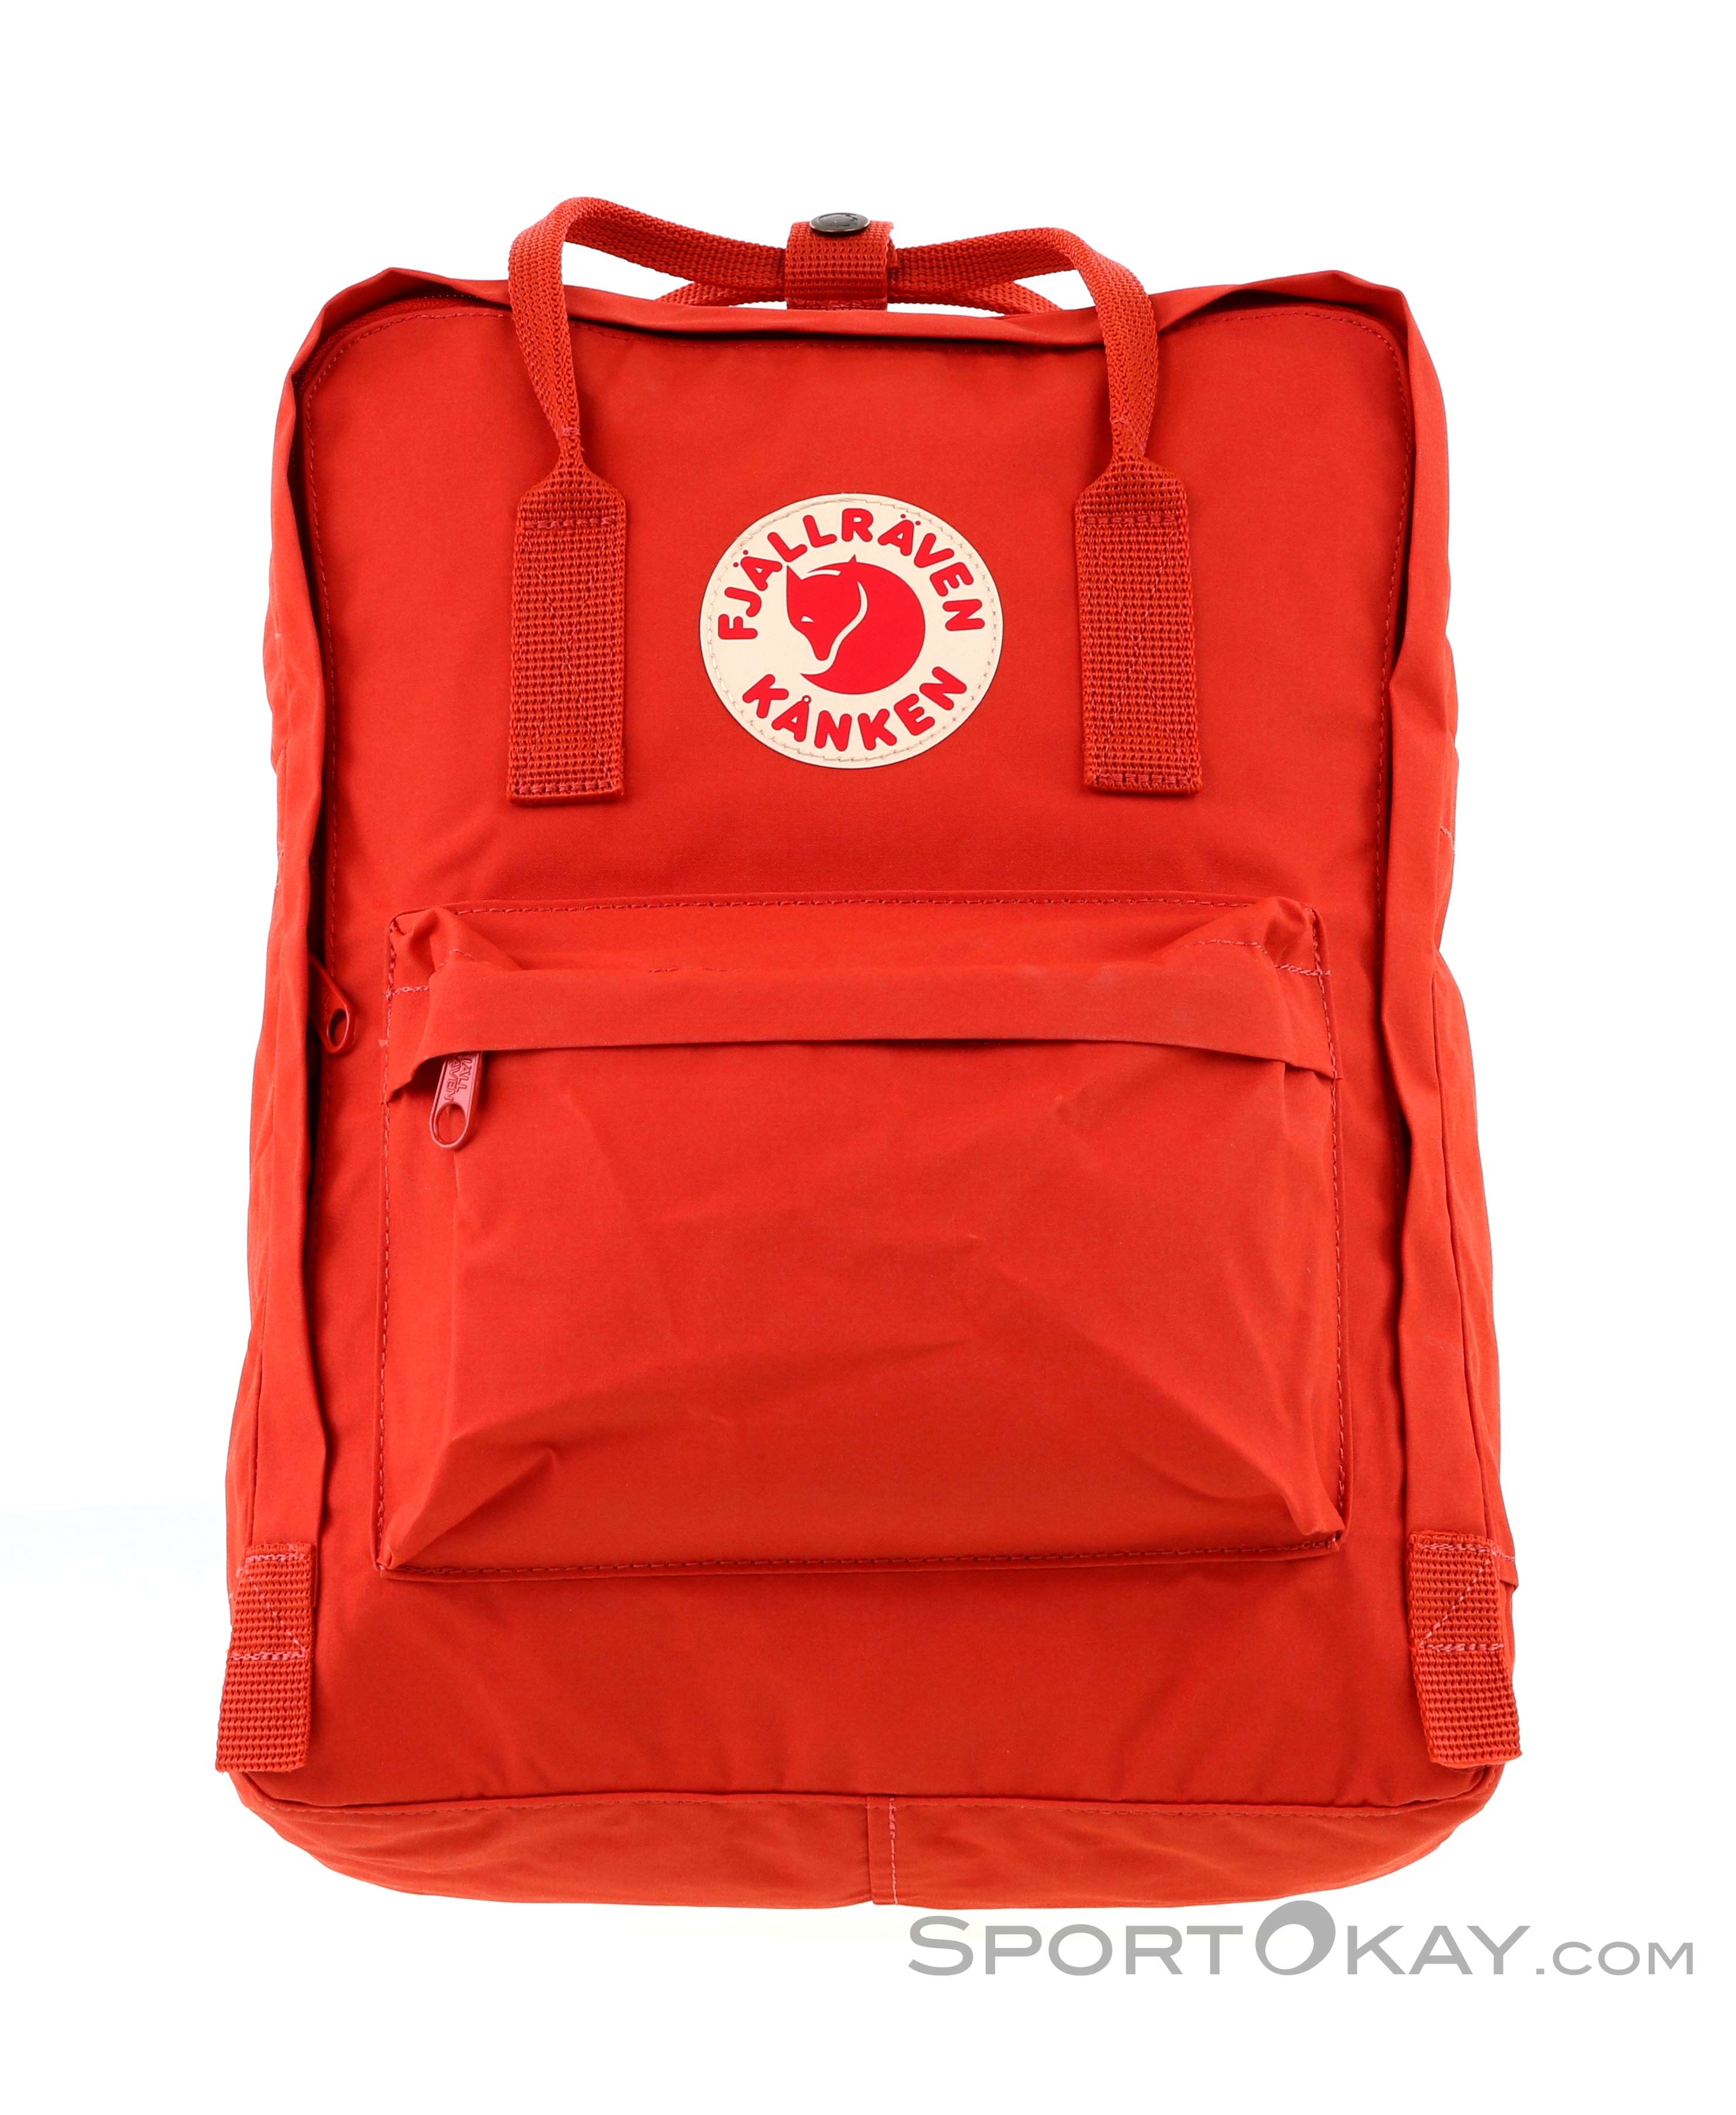 Unisex 20L/16L/7L Backpack Fjallraven Kanken Travel Shoulder School Bags UK New 